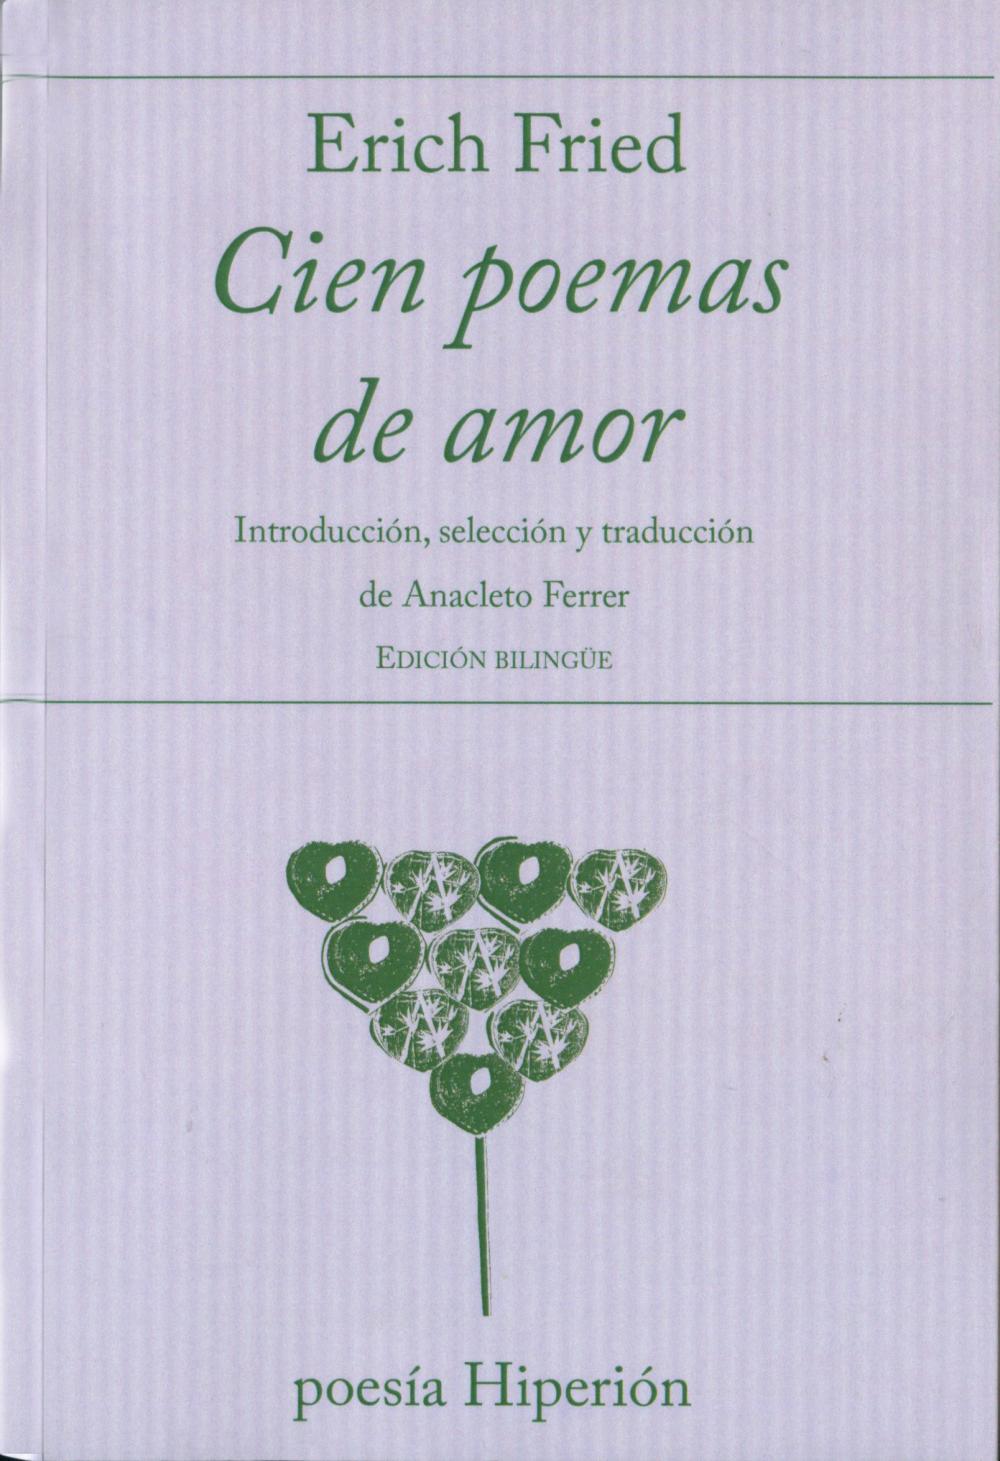 Cien poemas de amor